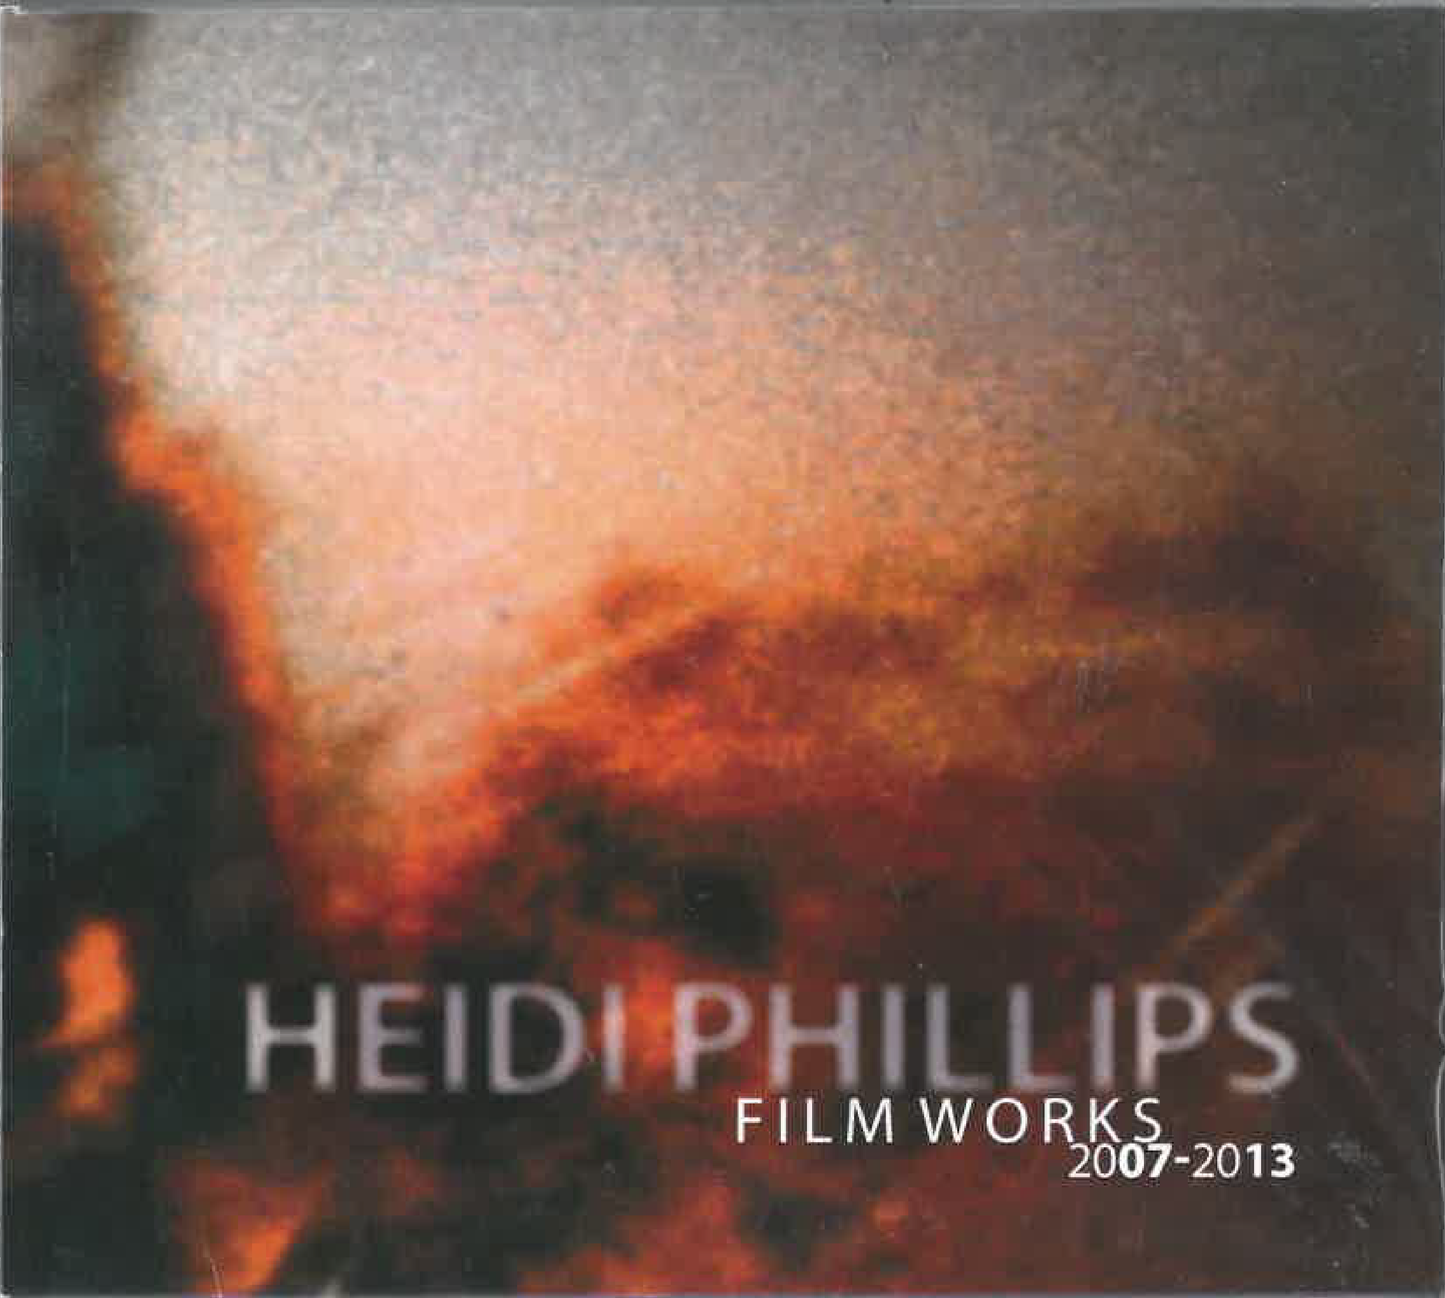 Heidi Phillips Film Works - 2007 - 2013